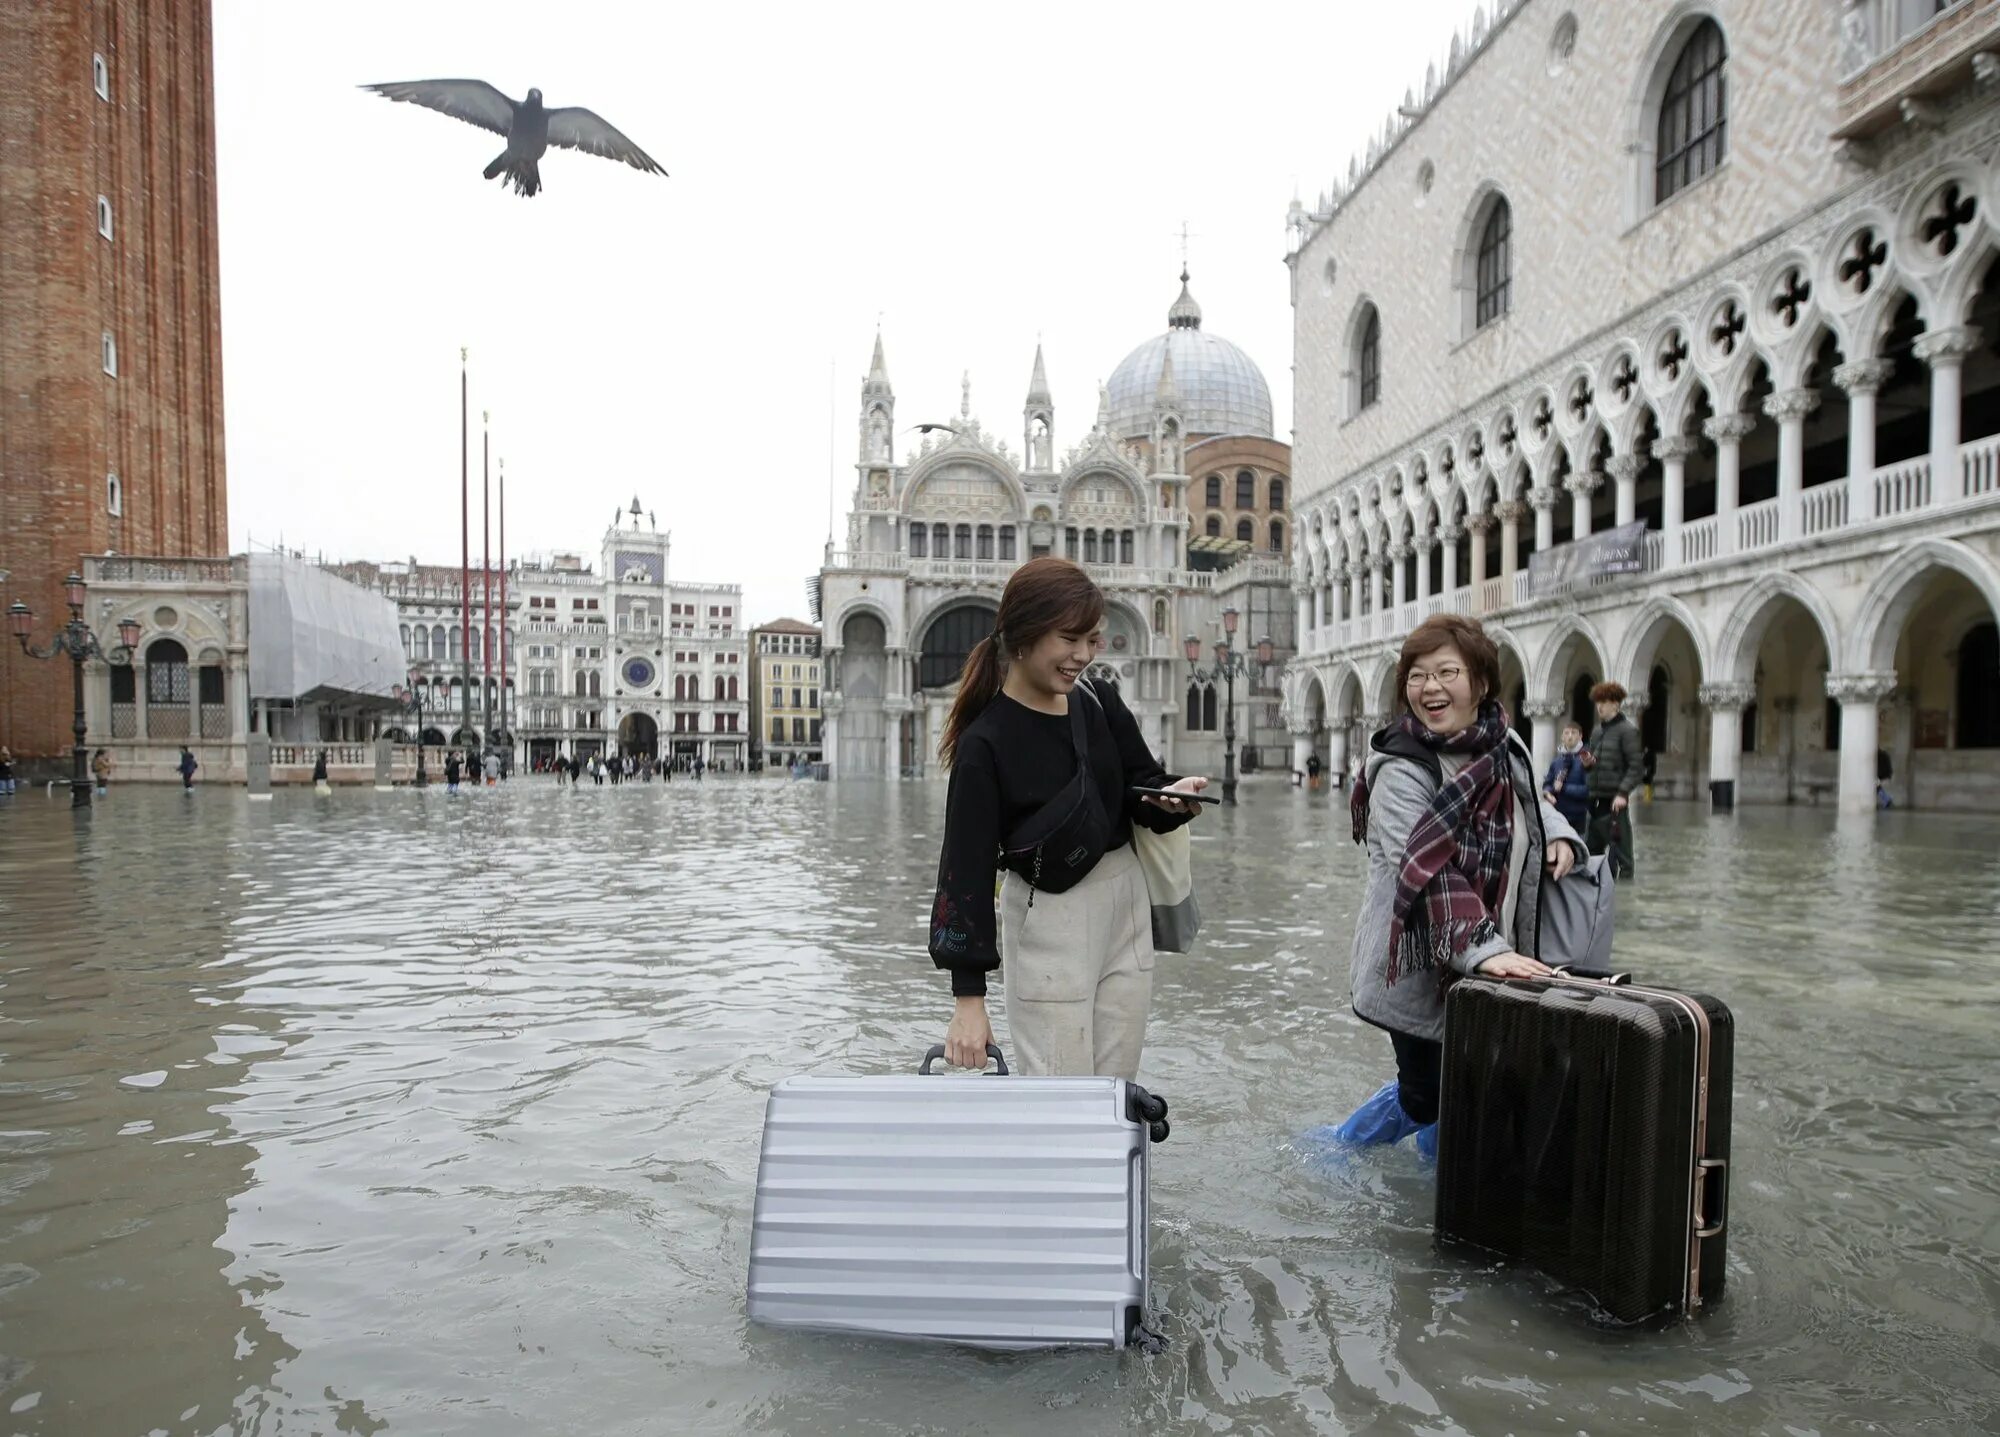 Гулять в настоящем времени. Площадь Сан Марко в Венеции затопило. Наводнение на площади Сан Марко. Венеция Сан Марко наводнение 2019. Площадь Сан Марко затоплена.